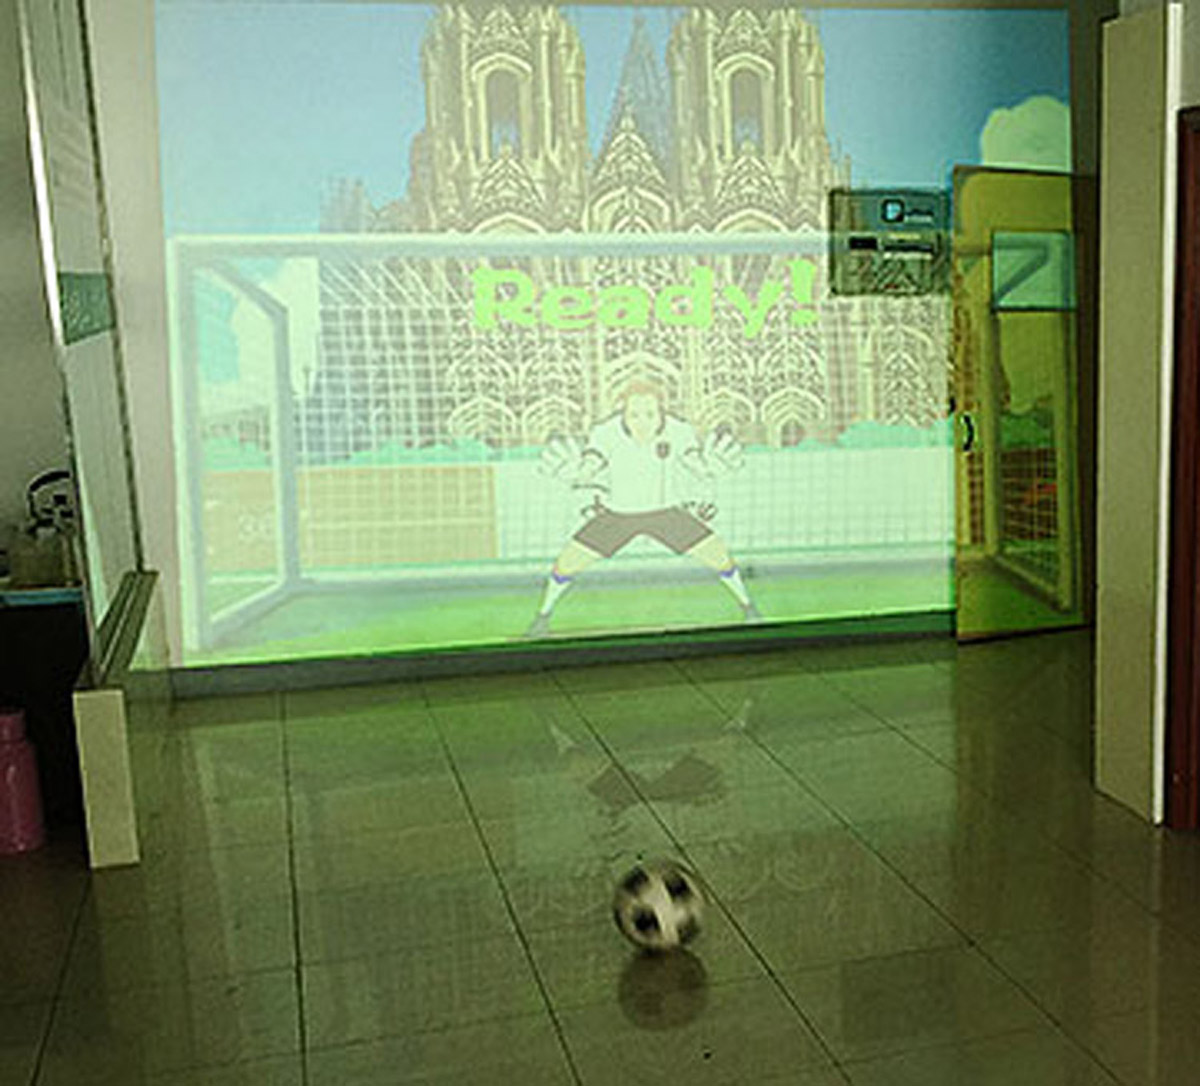 公共安全使用体感识别技术的虚拟足球射门.jpg